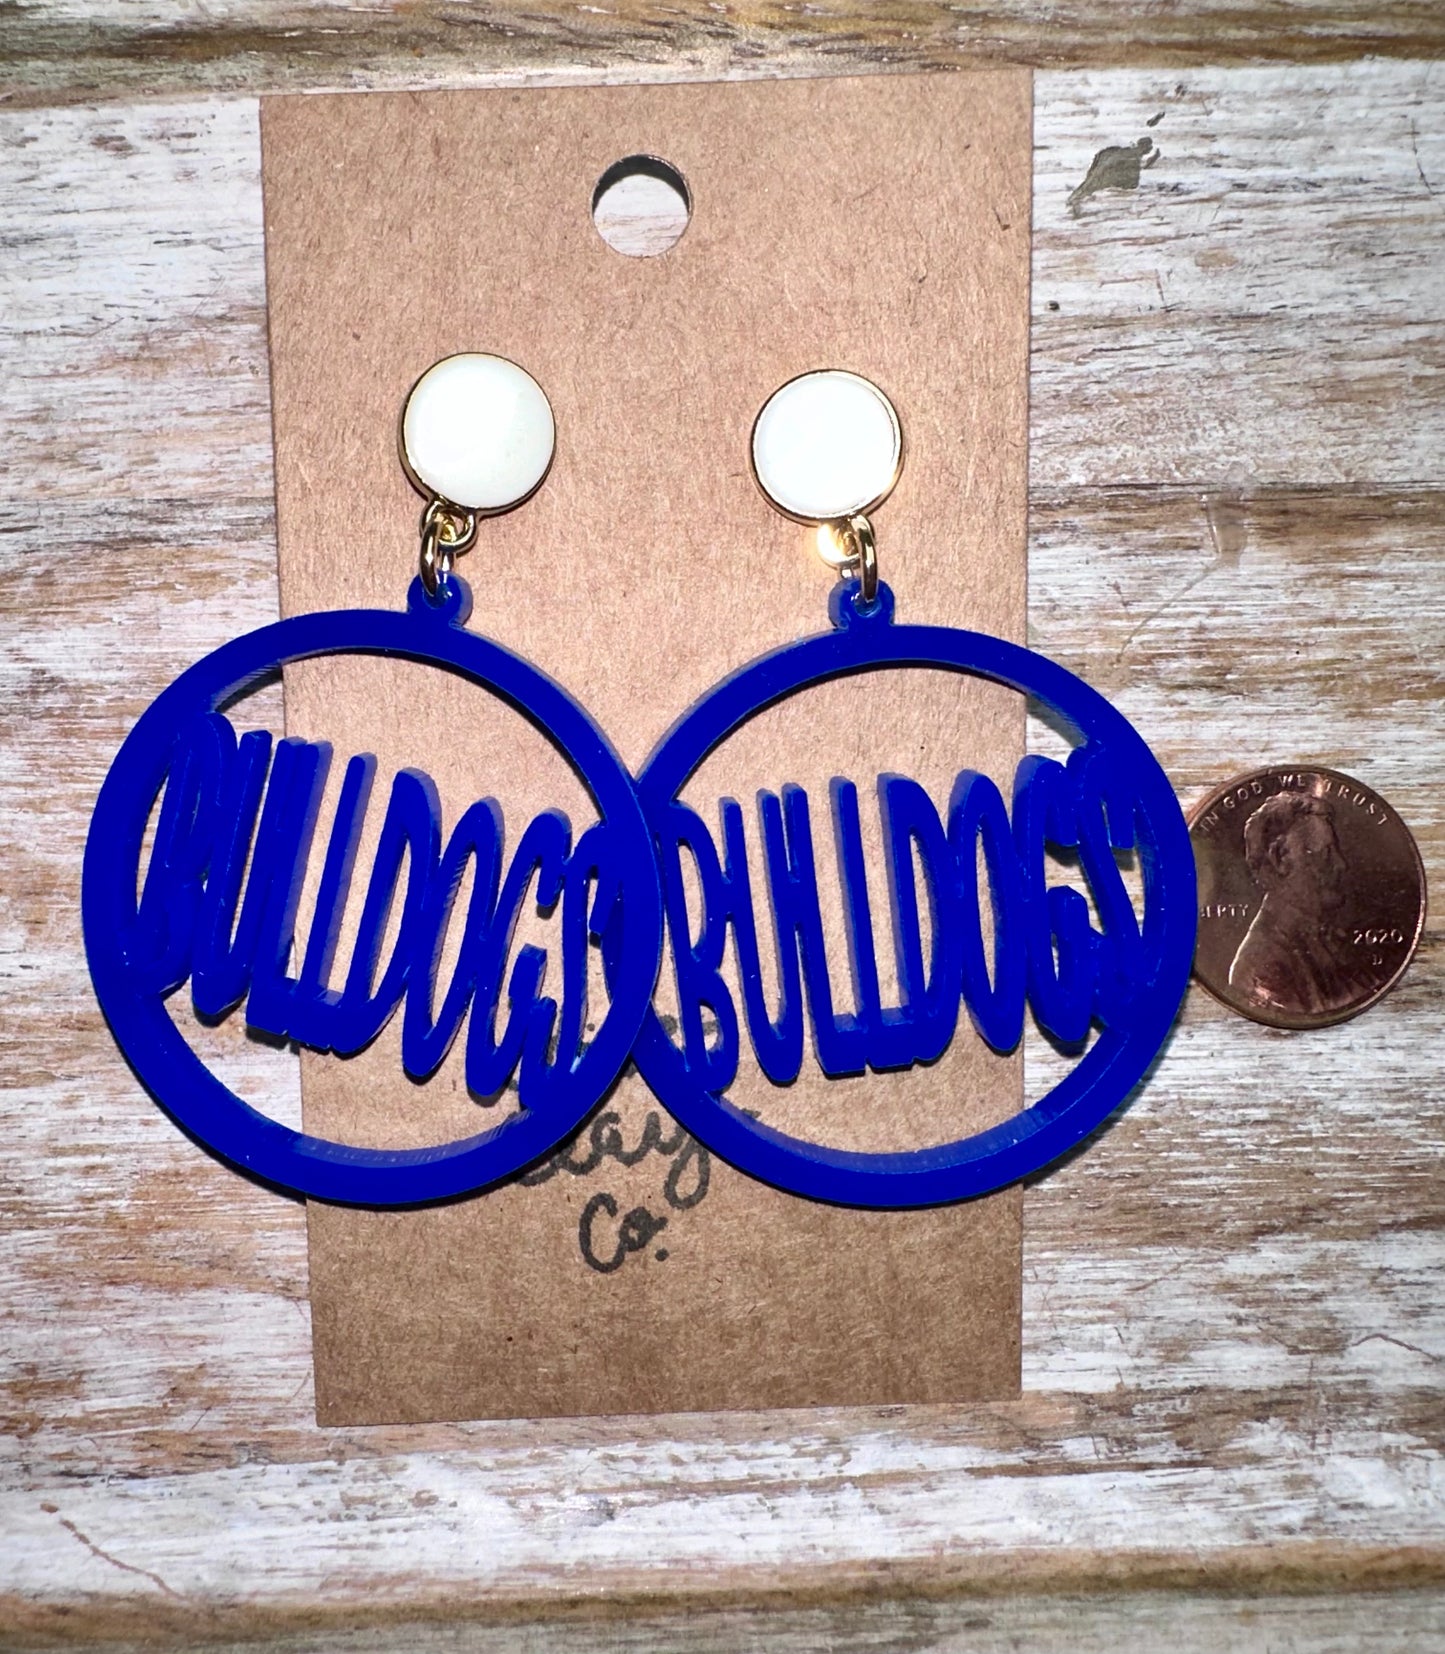 Vancleave bulldogs hoop earrings